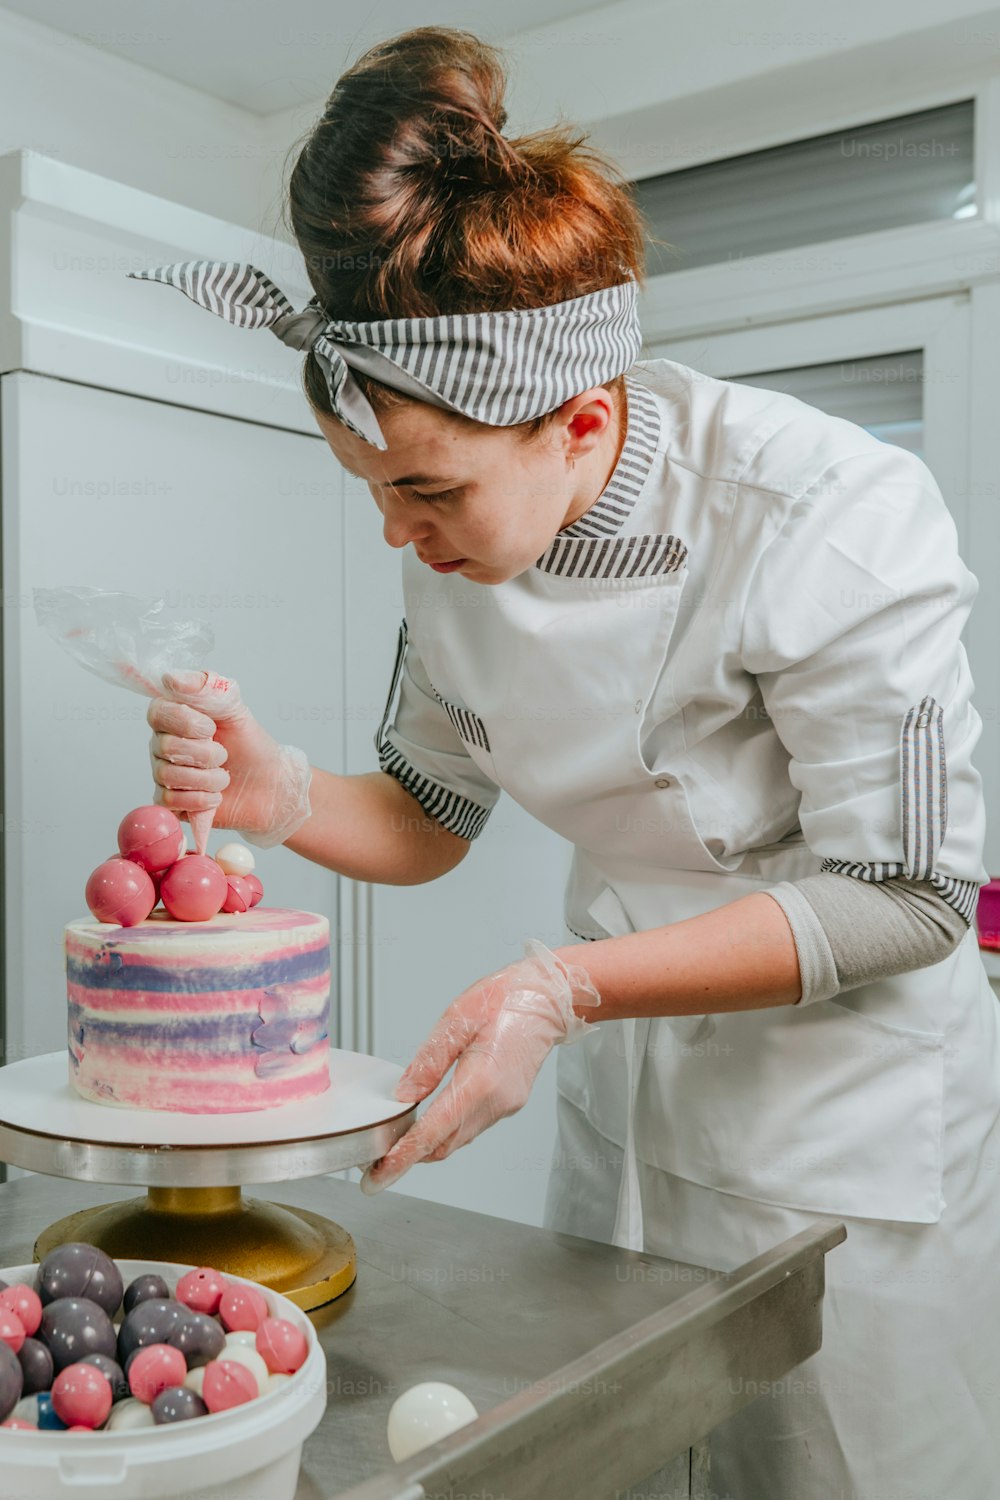 Confiseuse décorant un gâteau d’anniversaire dans l’atelier de confiserie